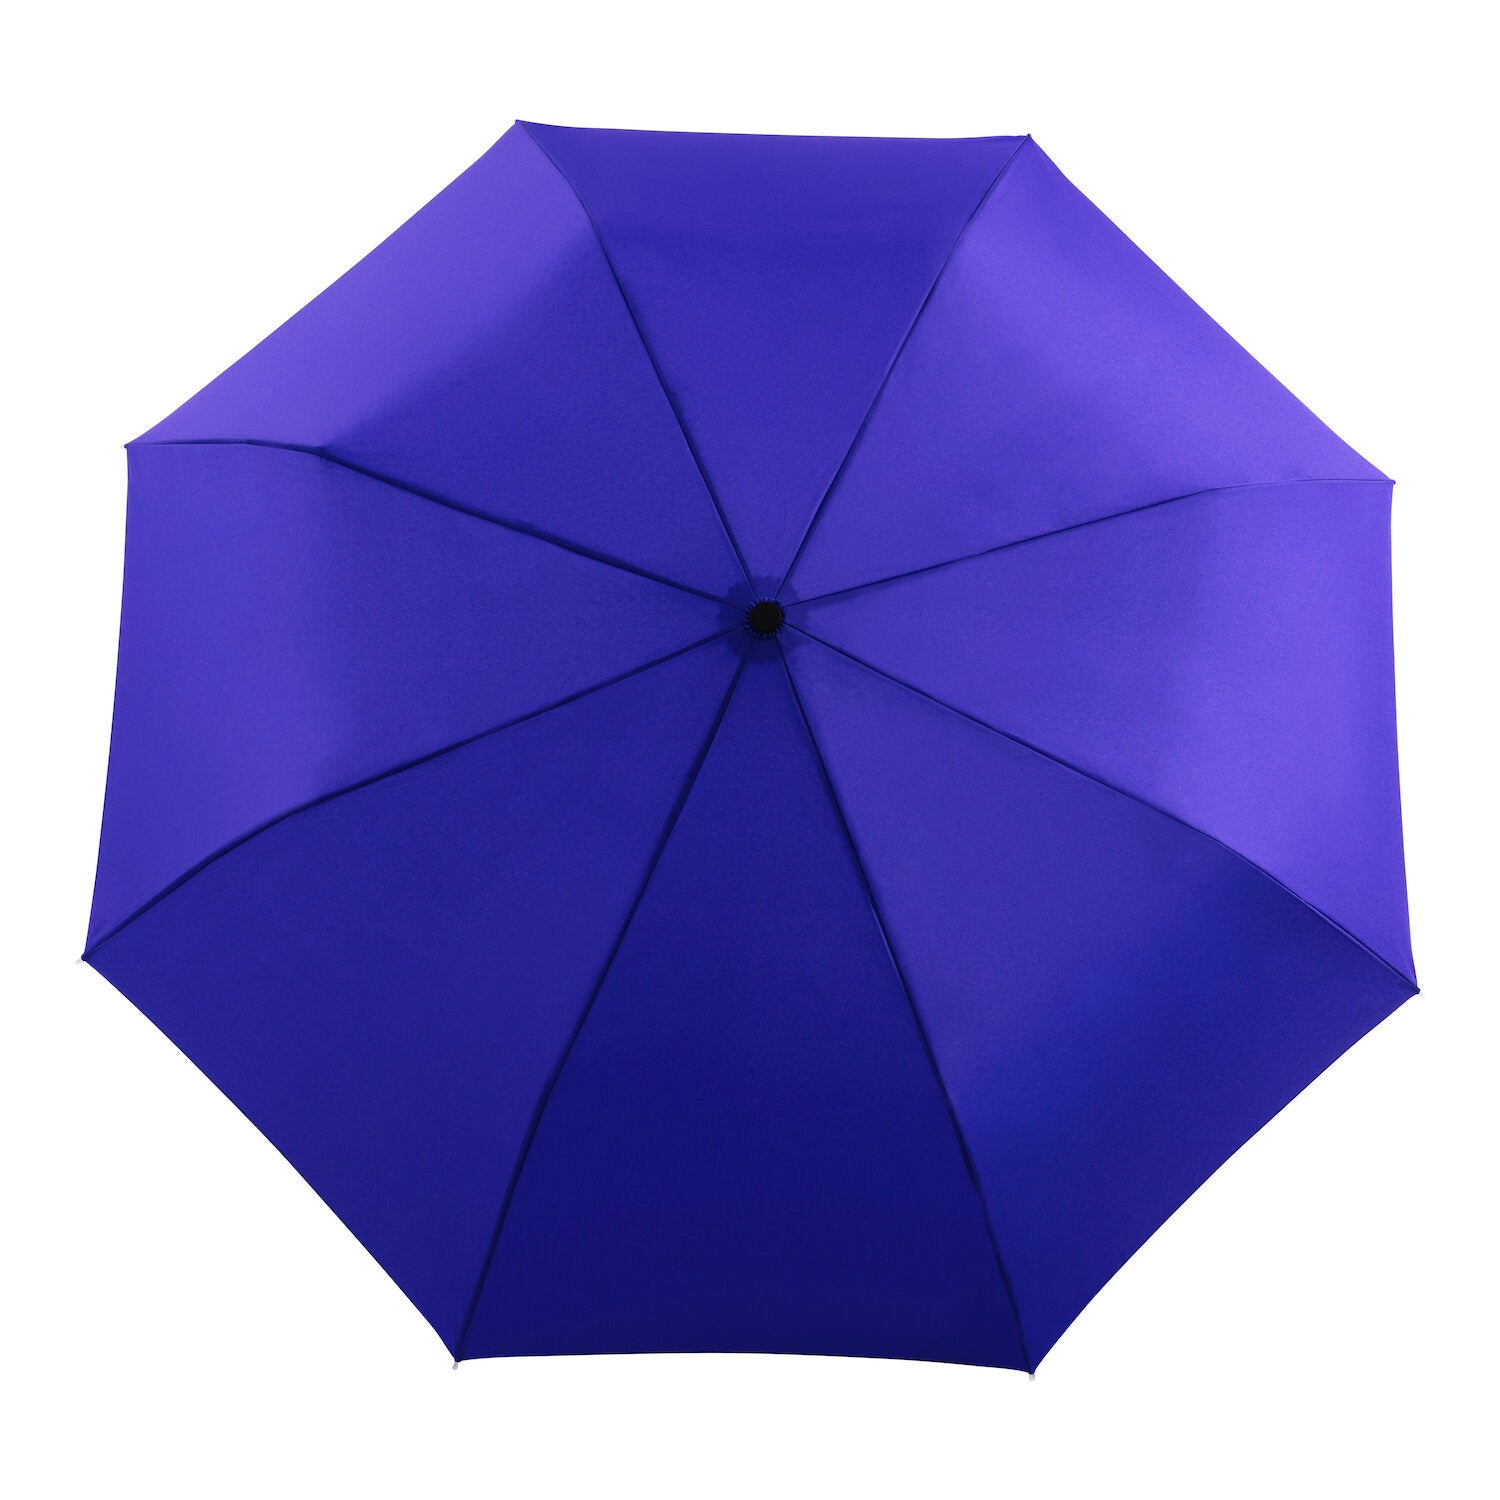 blue duckhead umbrella open view